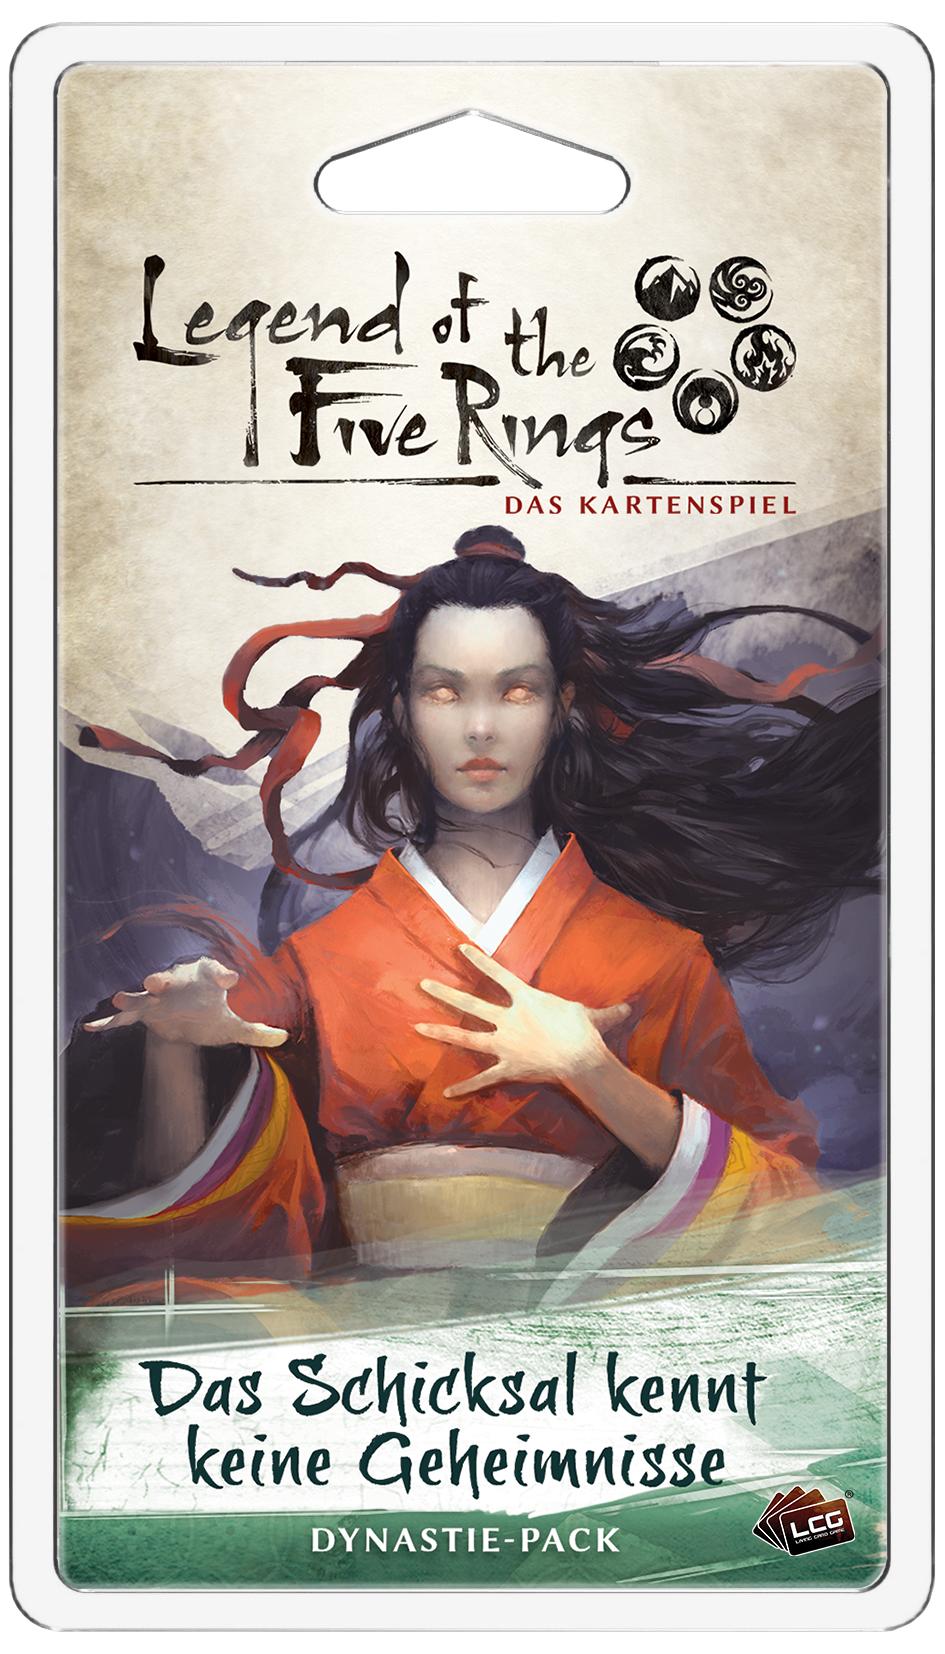 Legend of the Five Rings: Das Kartenspiel - Kaiserreich 5: Das Schicksal kennt keine Geheimnisse Dyn